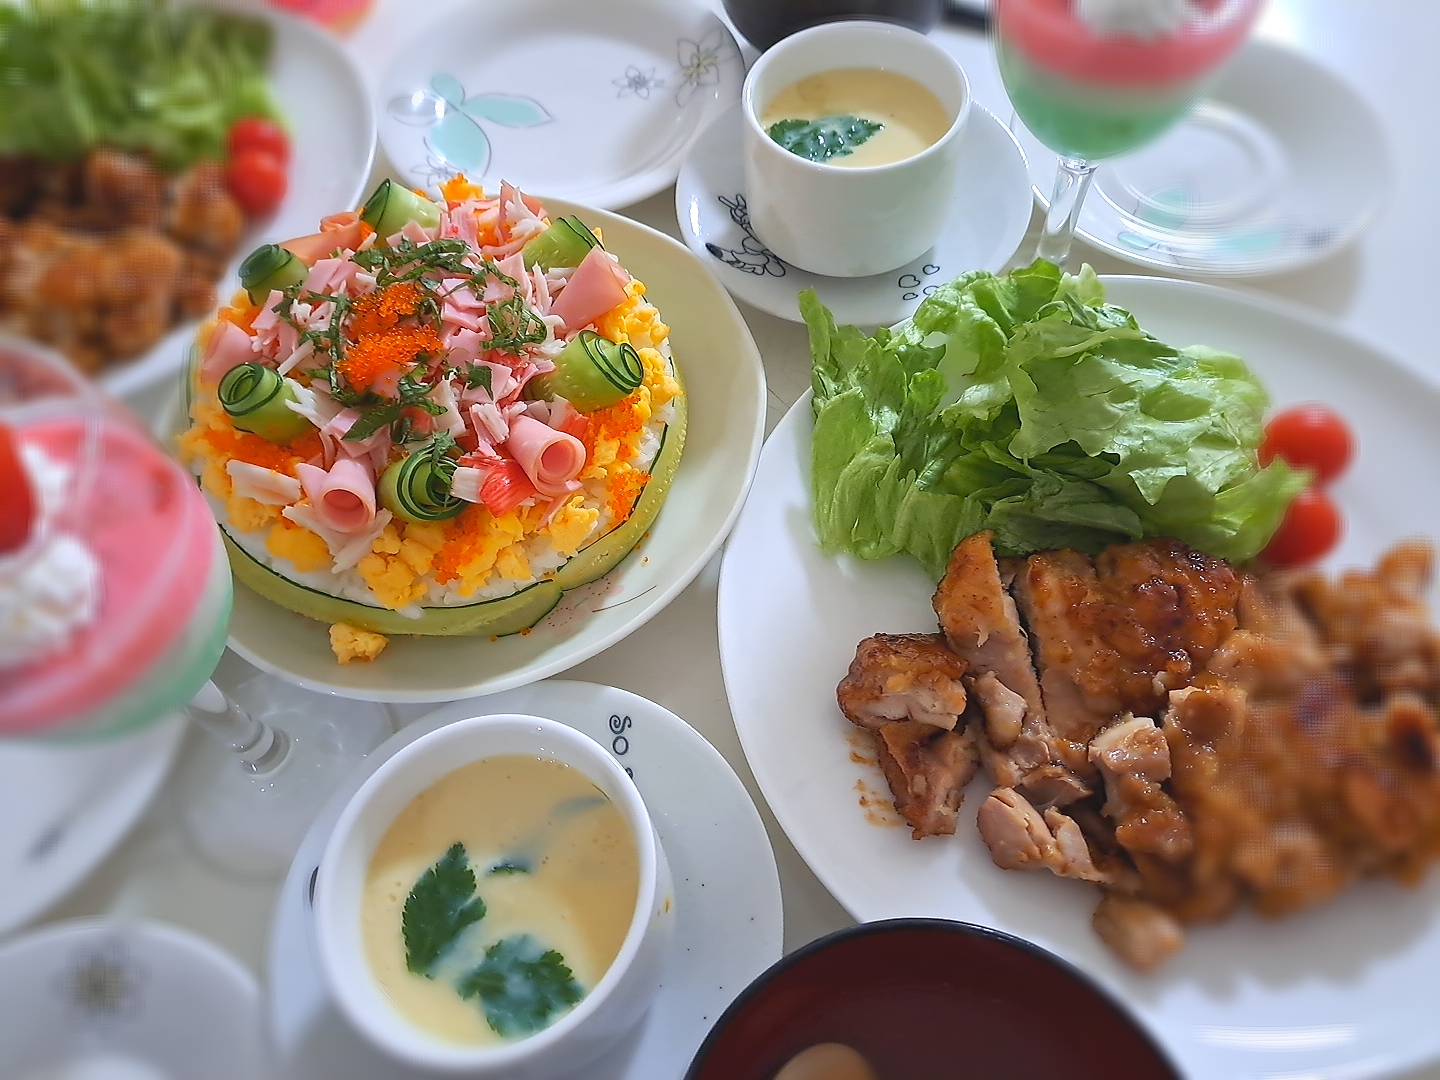 昨日のひな祭り夕食(*ˊ˘ˋ*)🎎🍡🌸
ちらし寿司ケーキ
照り焼きチキン＆サラダ🥗
茶碗蒸し
蛤お吸い物
3色ミルクプリン